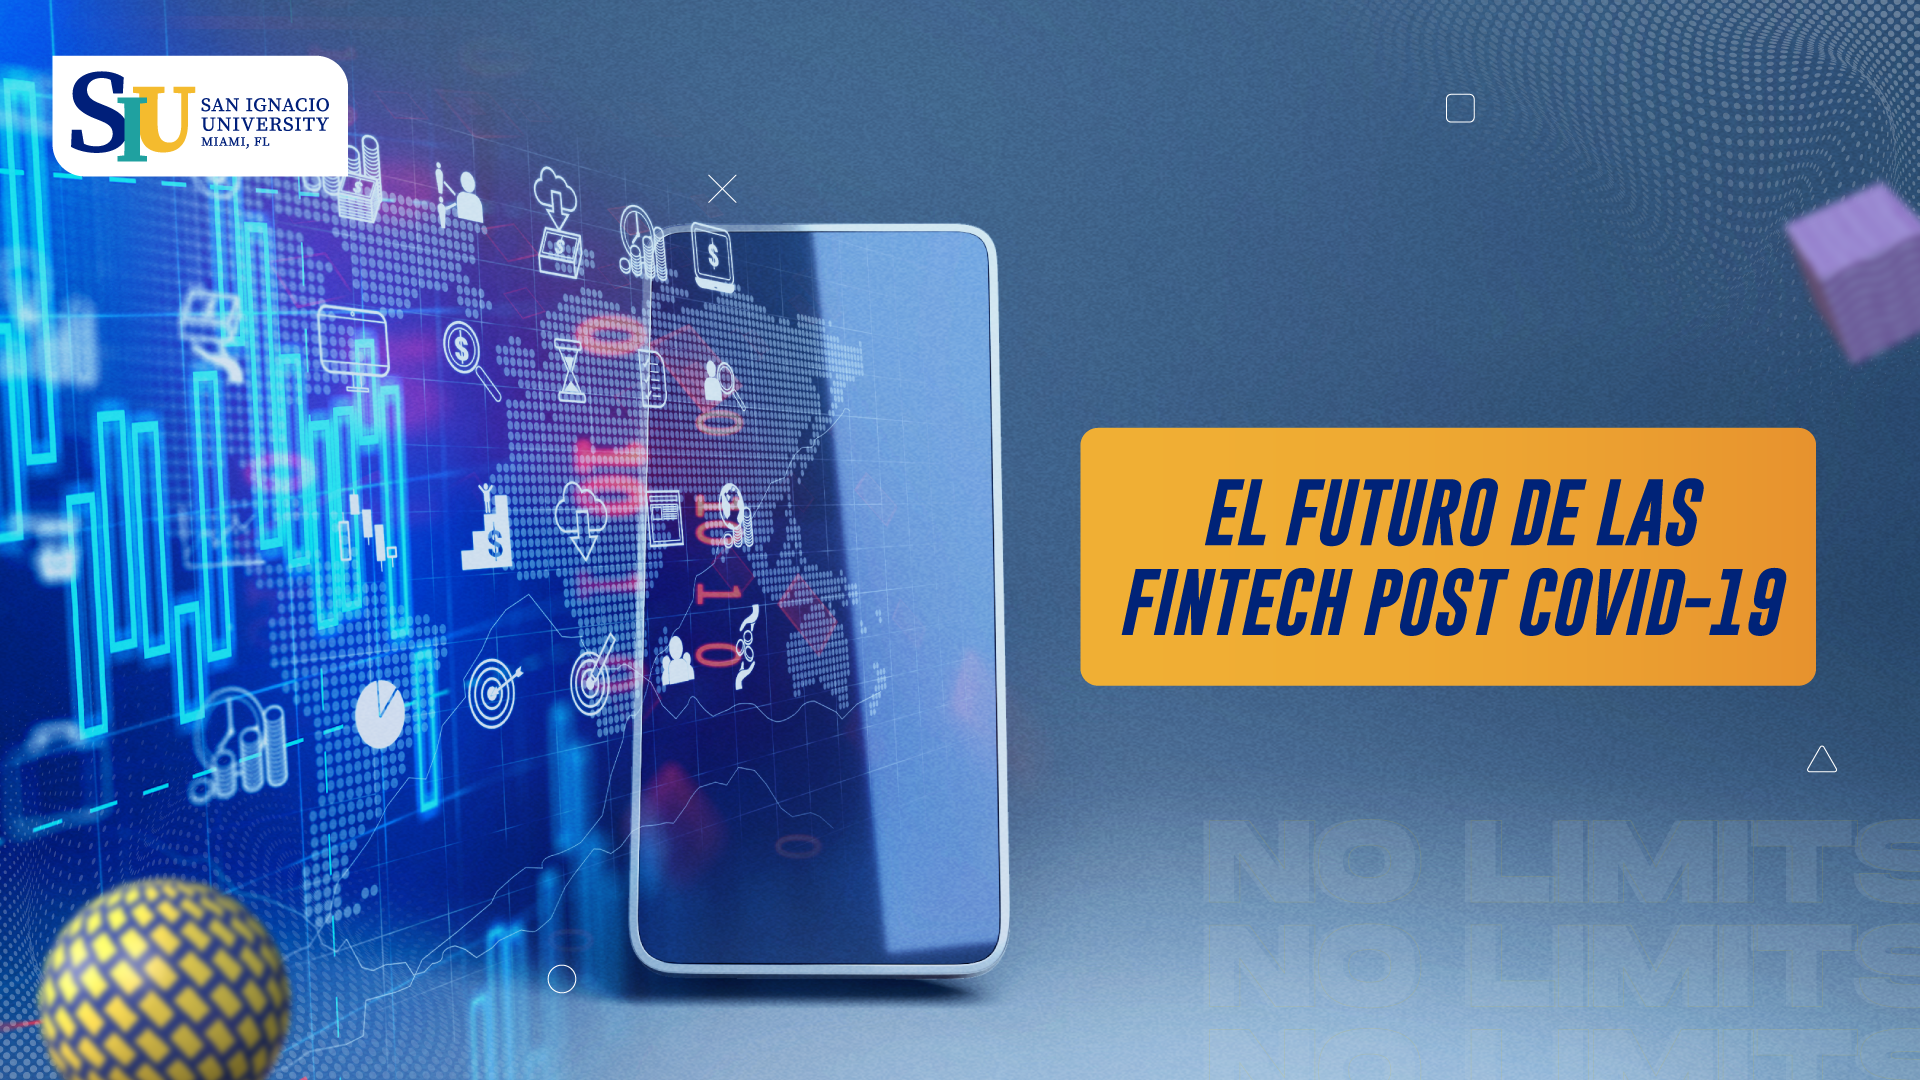 El futuro de las fintechs en el Perú: oportunidades con tecnología financiera post COVID-19 por Juan Antonio Lillo Paredes